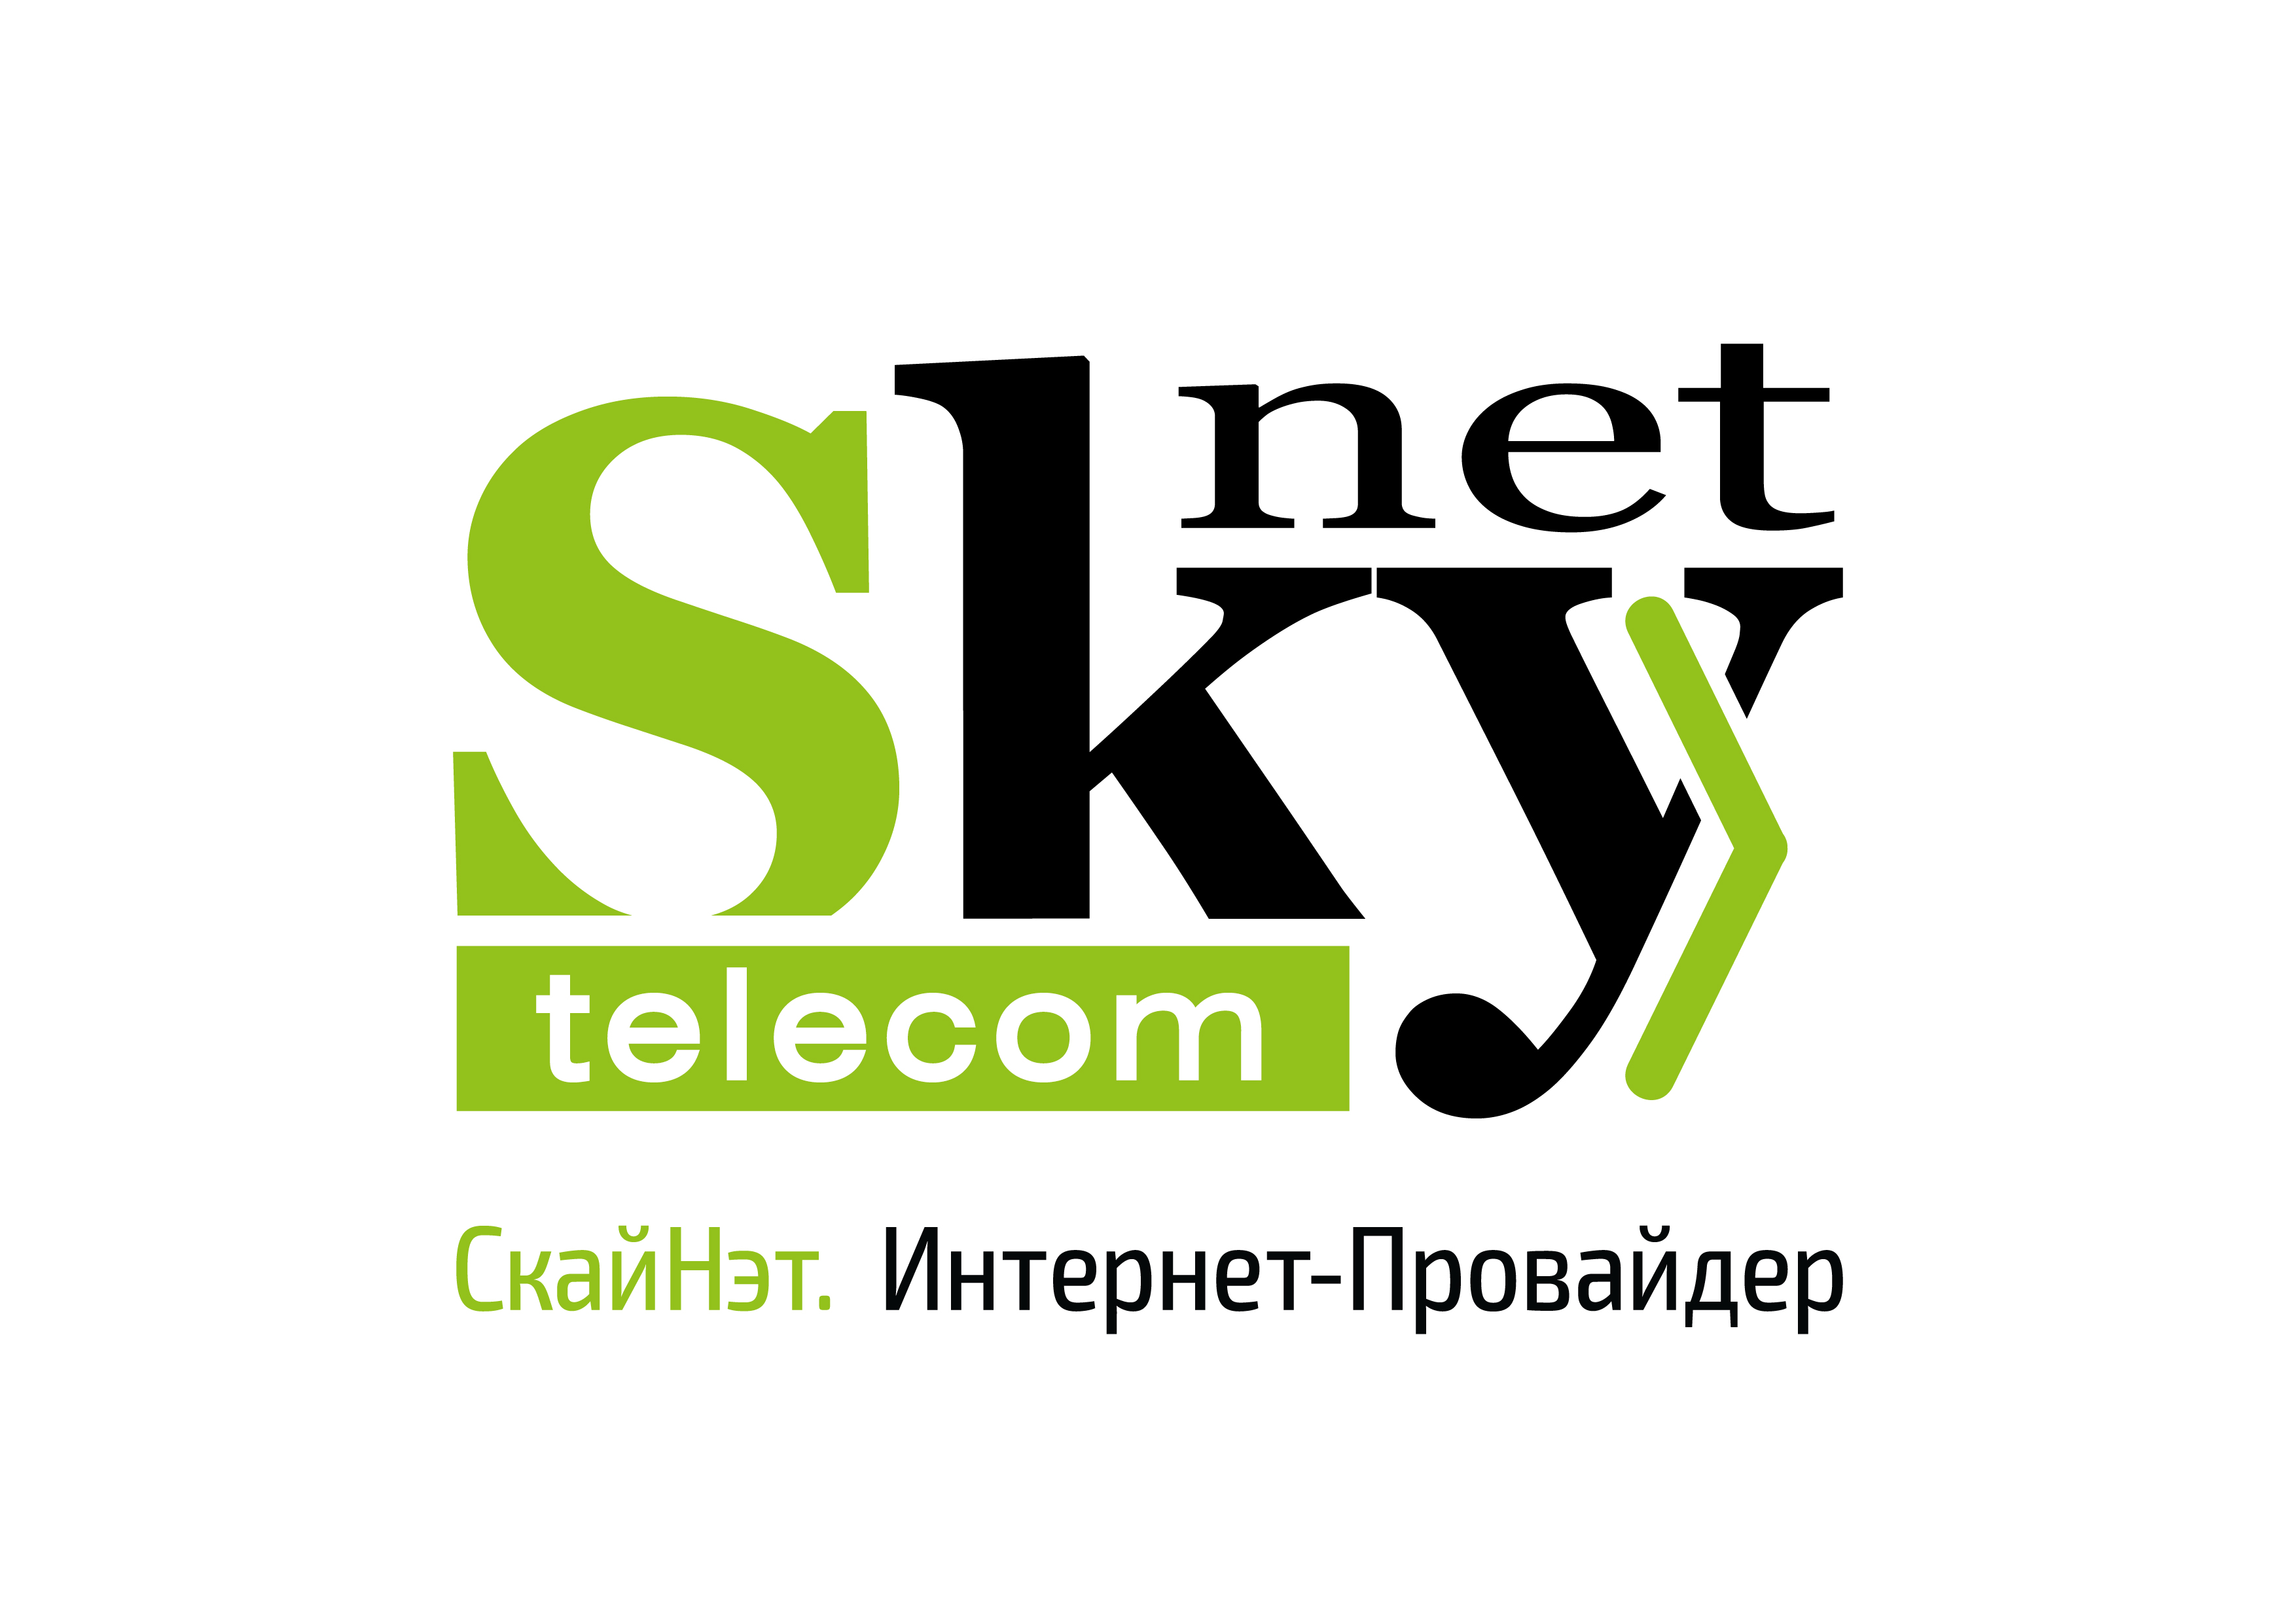 Sky.net